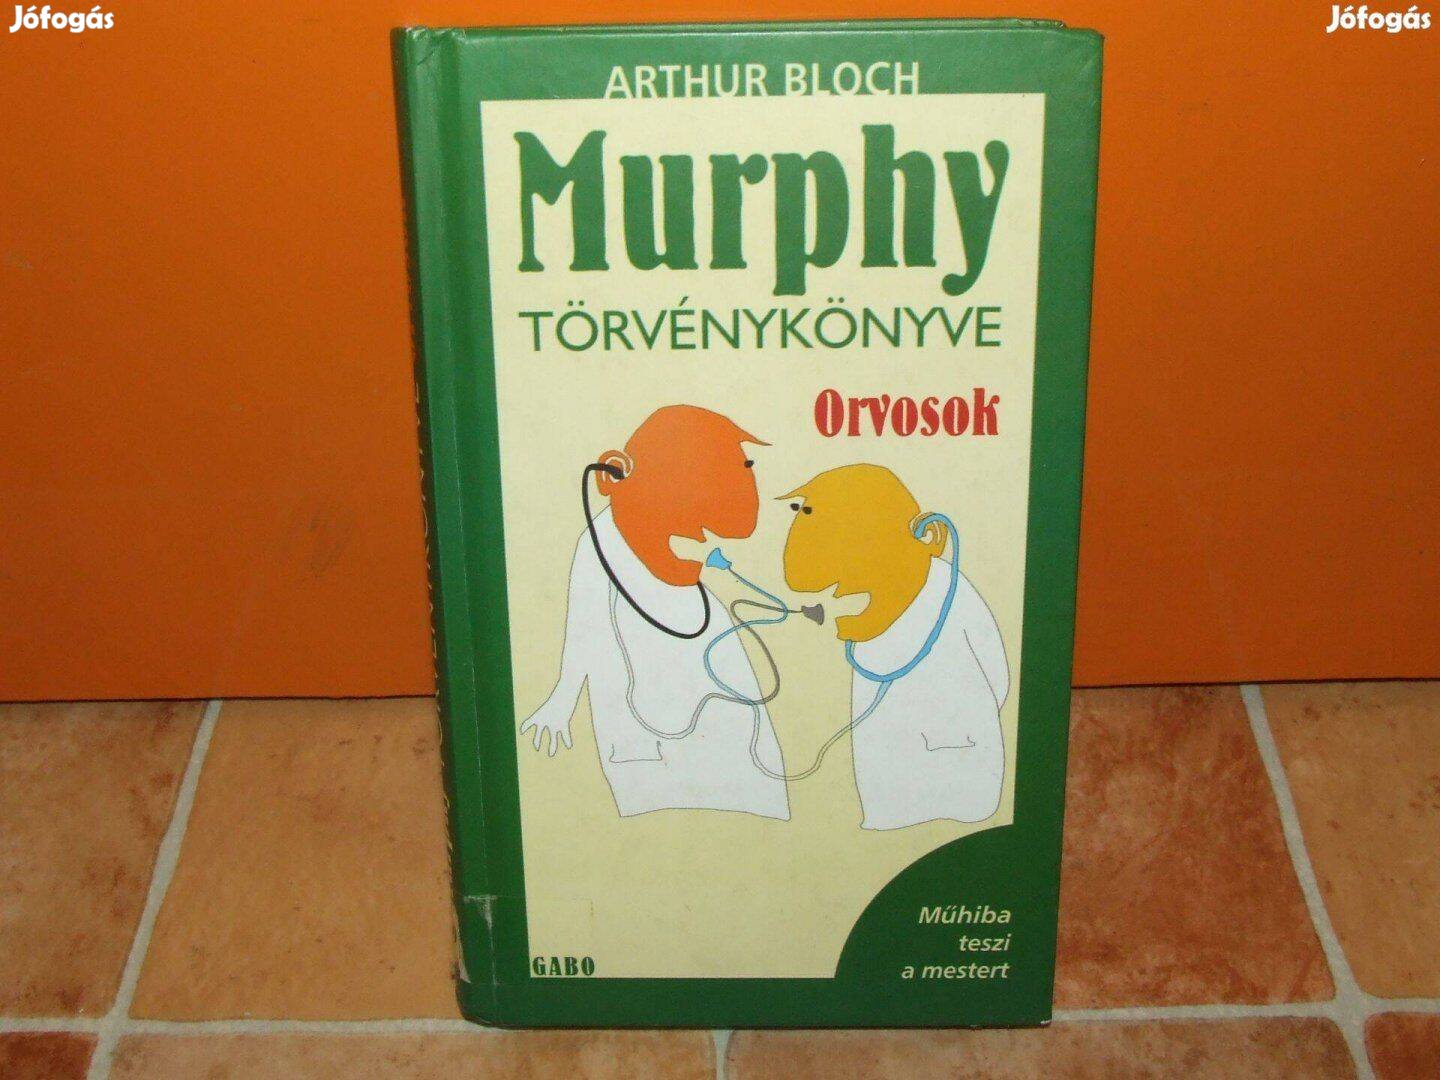 Murphy törvénykönyve Orvosok